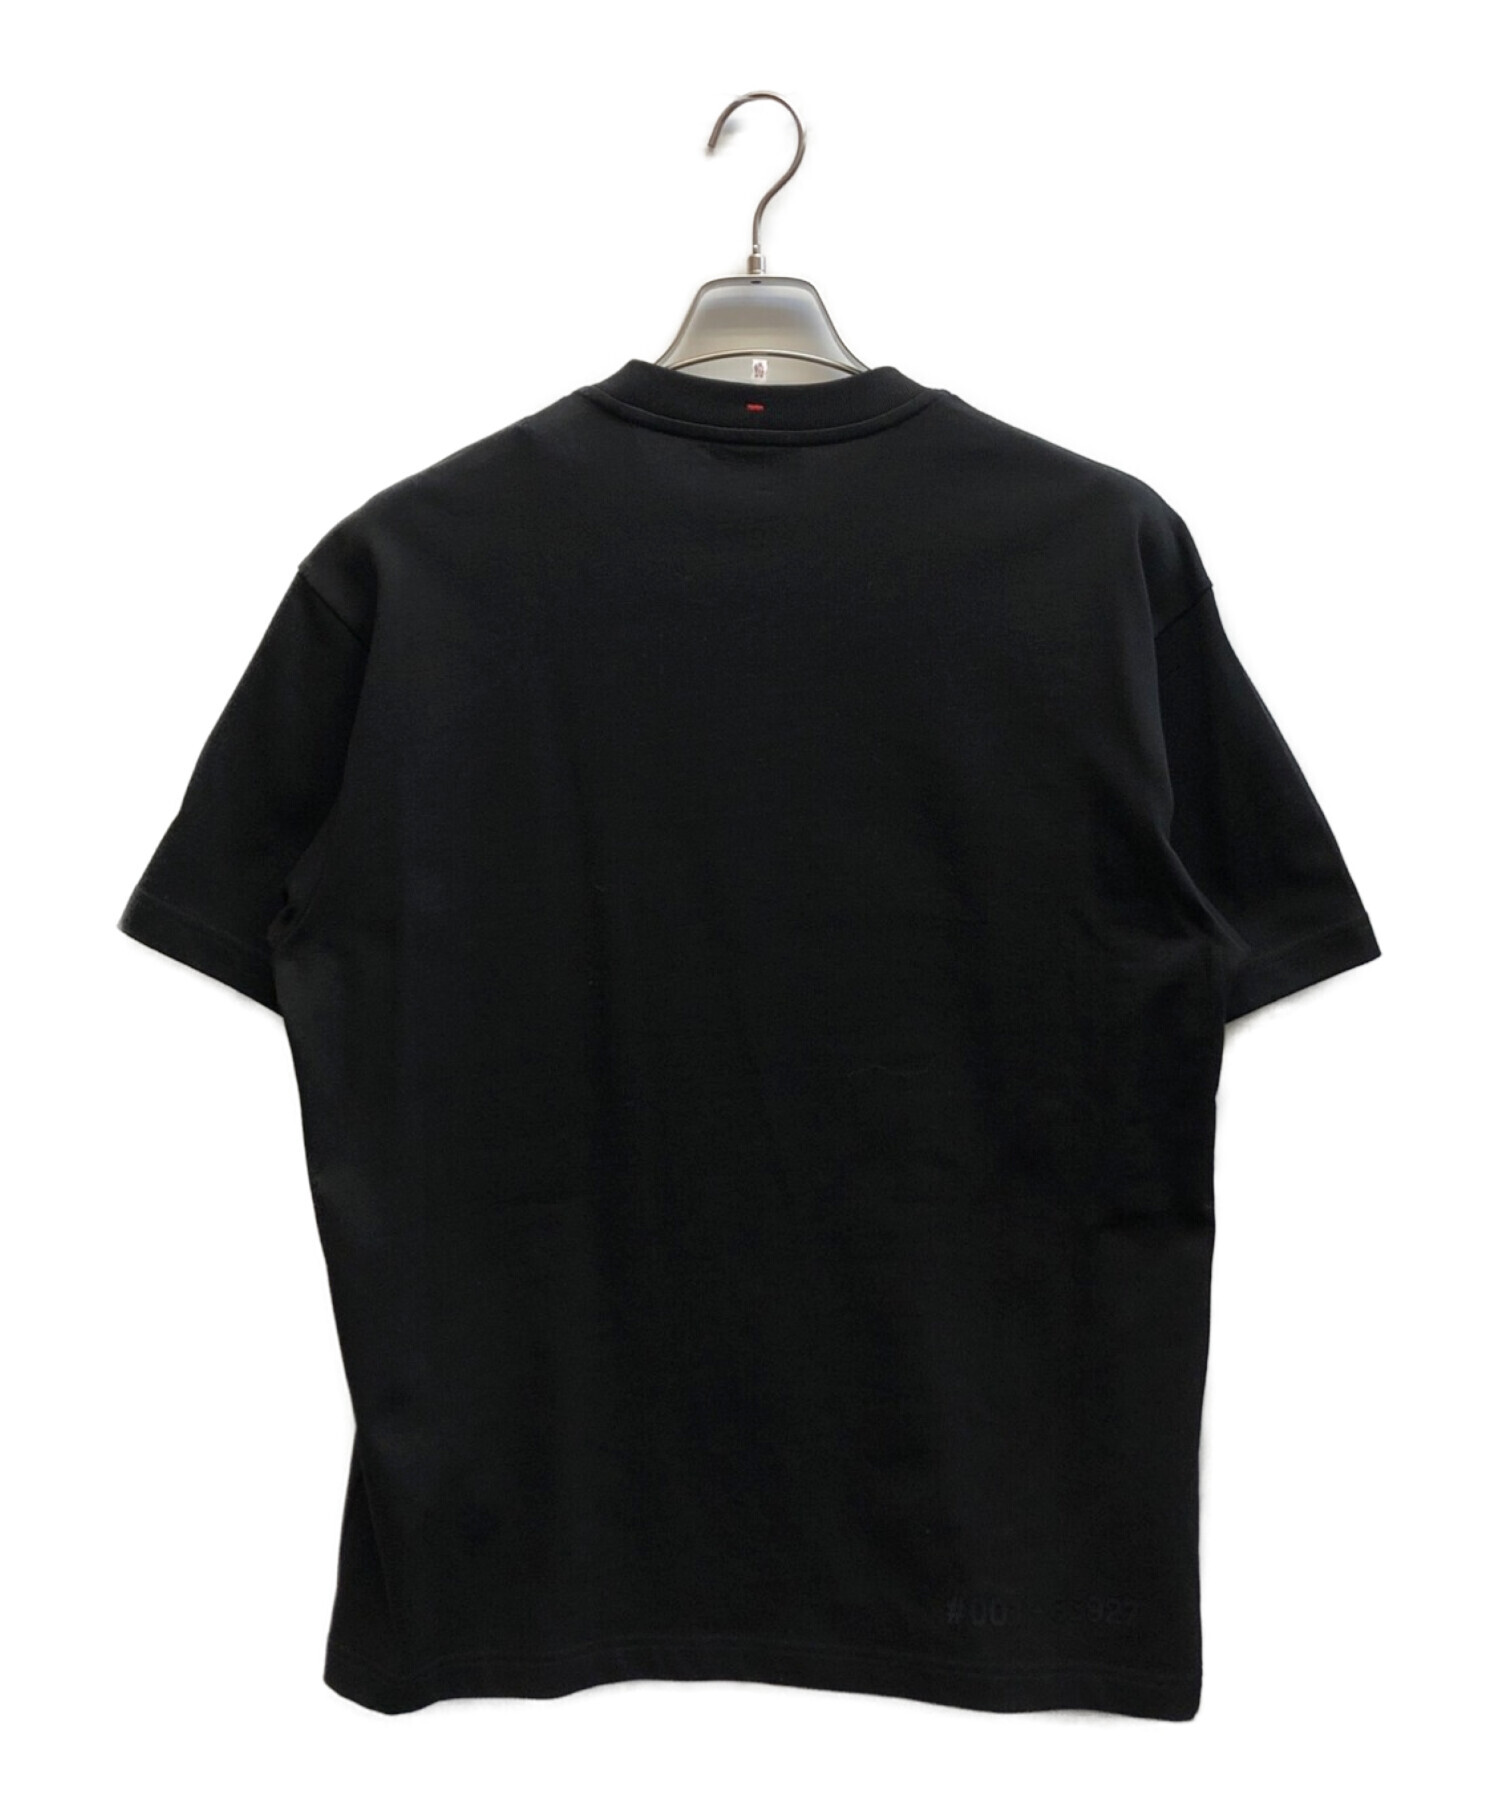 MONCLER (モンクレール) Moncler Grenoble ロゴ Tシャツ ブラック サイズ:M 未使用品